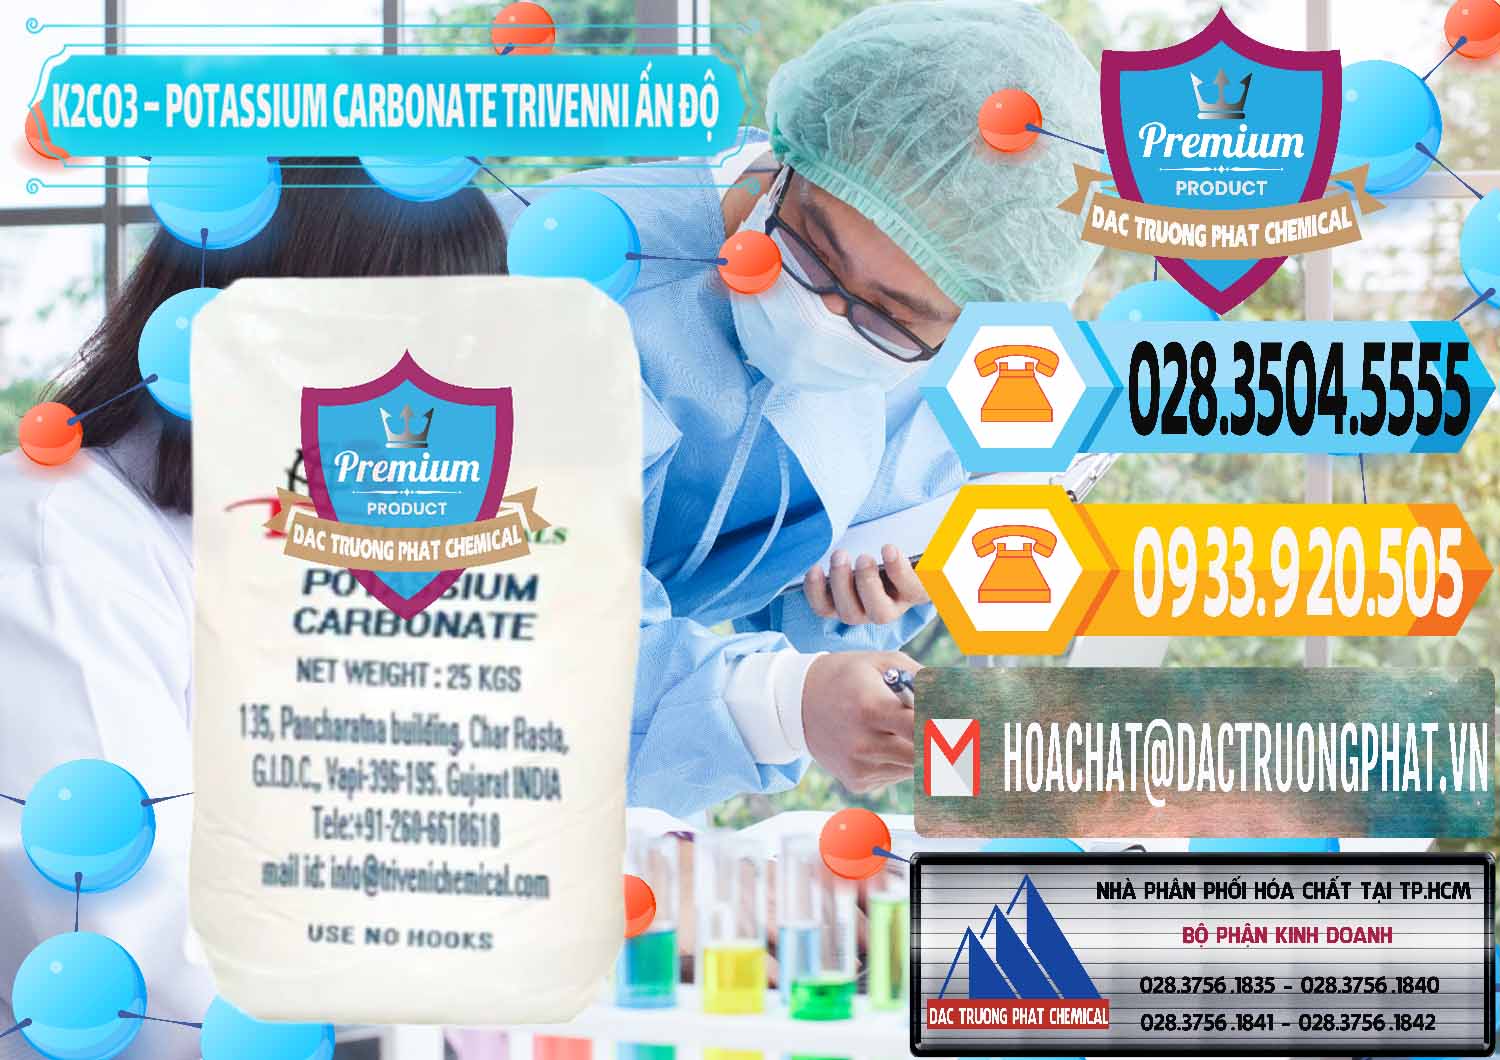 Công ty chuyên cung cấp - bán K2Co3 – Potassium Carbonate Trivenni Ấn Độ India - 0473 - Nhà cung cấp ( kinh doanh ) hóa chất tại TP.HCM - hoachattayrua.net